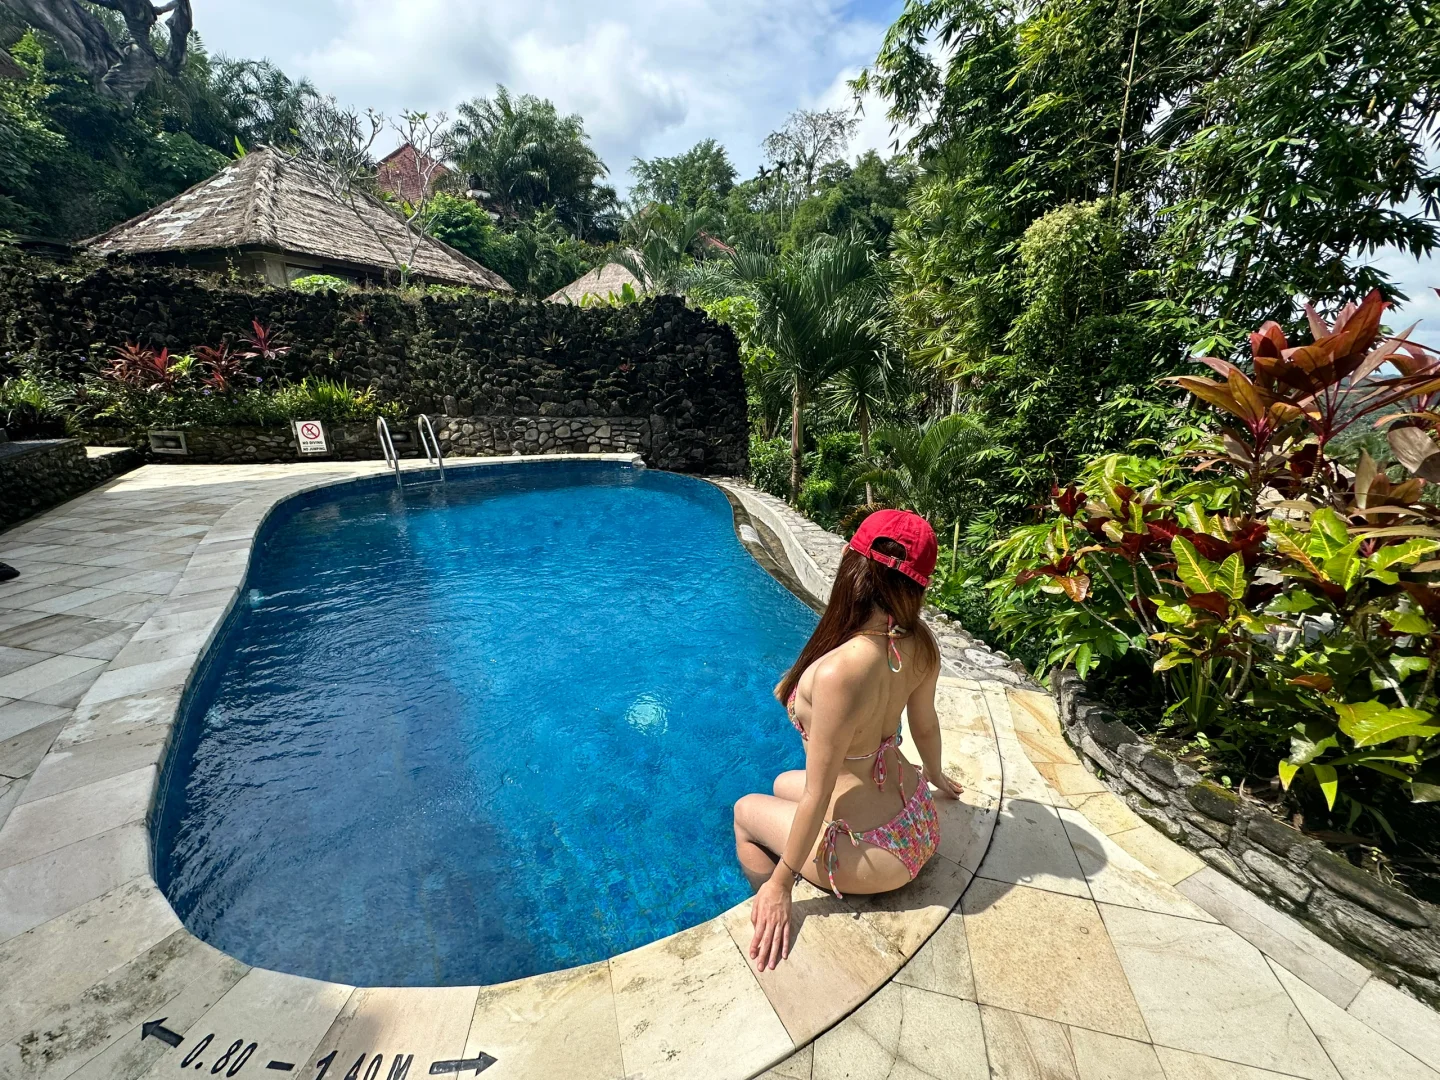 Bali-Potato head hotel, The royal pita maha hotel, IBAH LUXURY Villas experience